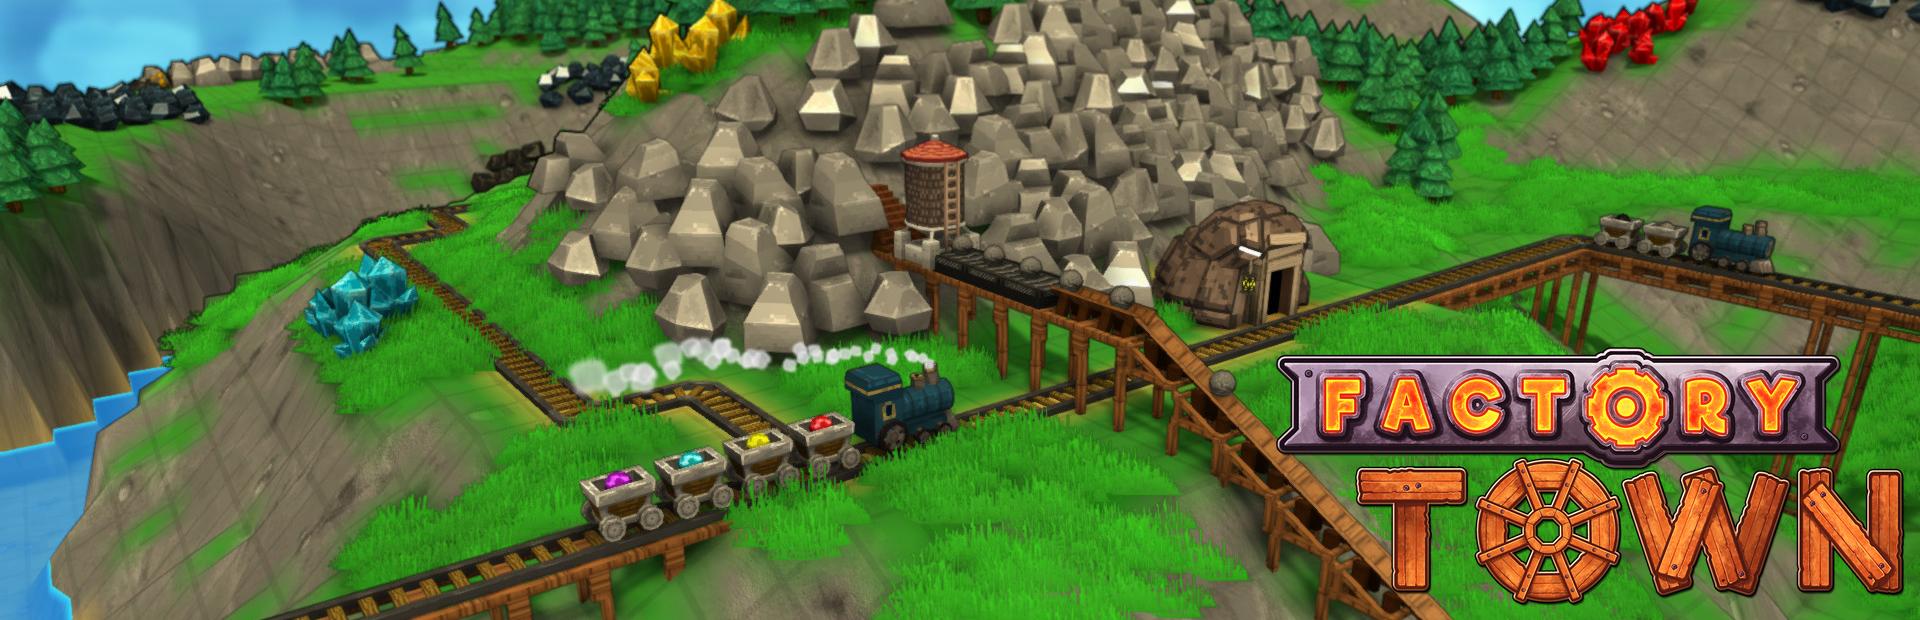 دانلود بازی Factory Town برای PC | گیمباتو